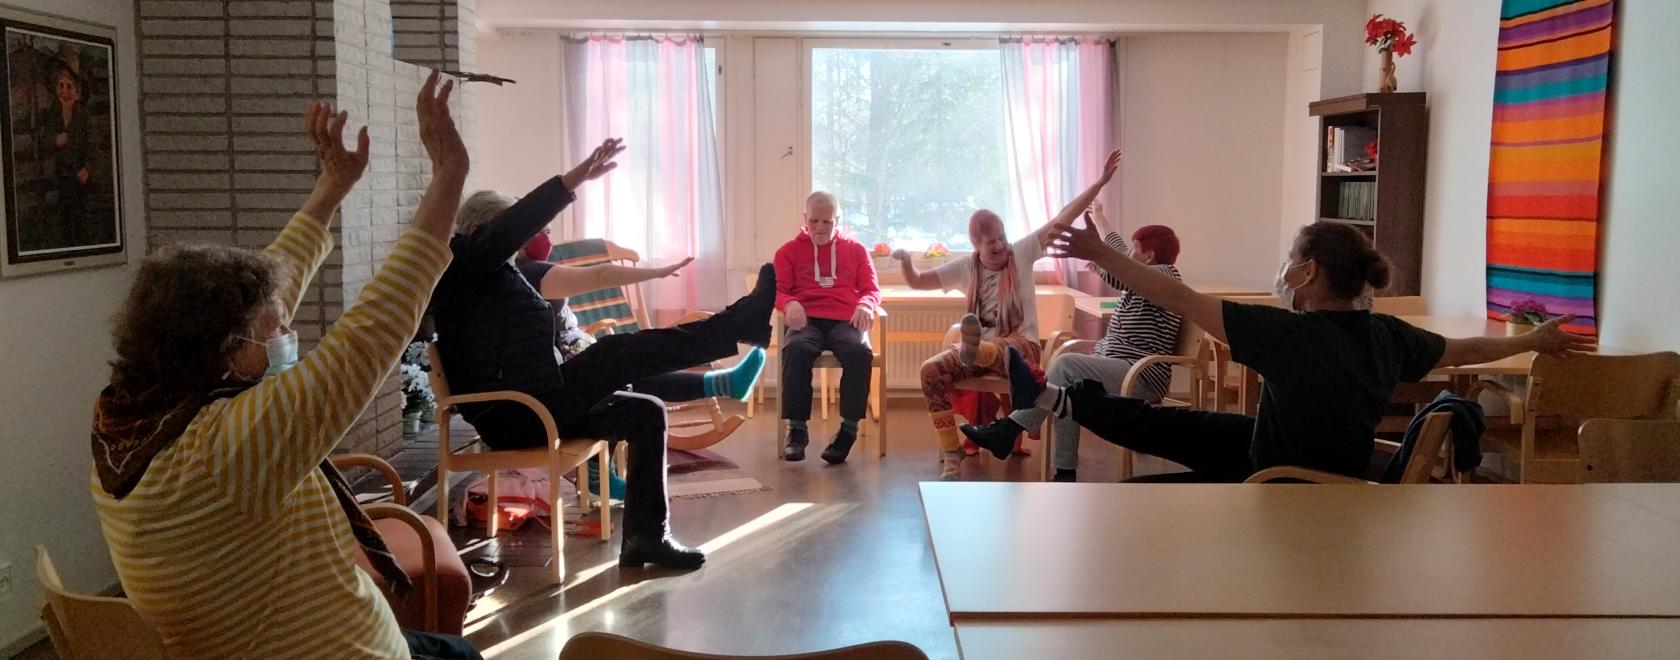 Vanhoja ihmisiä istumassa tuoleilla ympäri huonetta. Ihmiset tanssivat istualtaan.